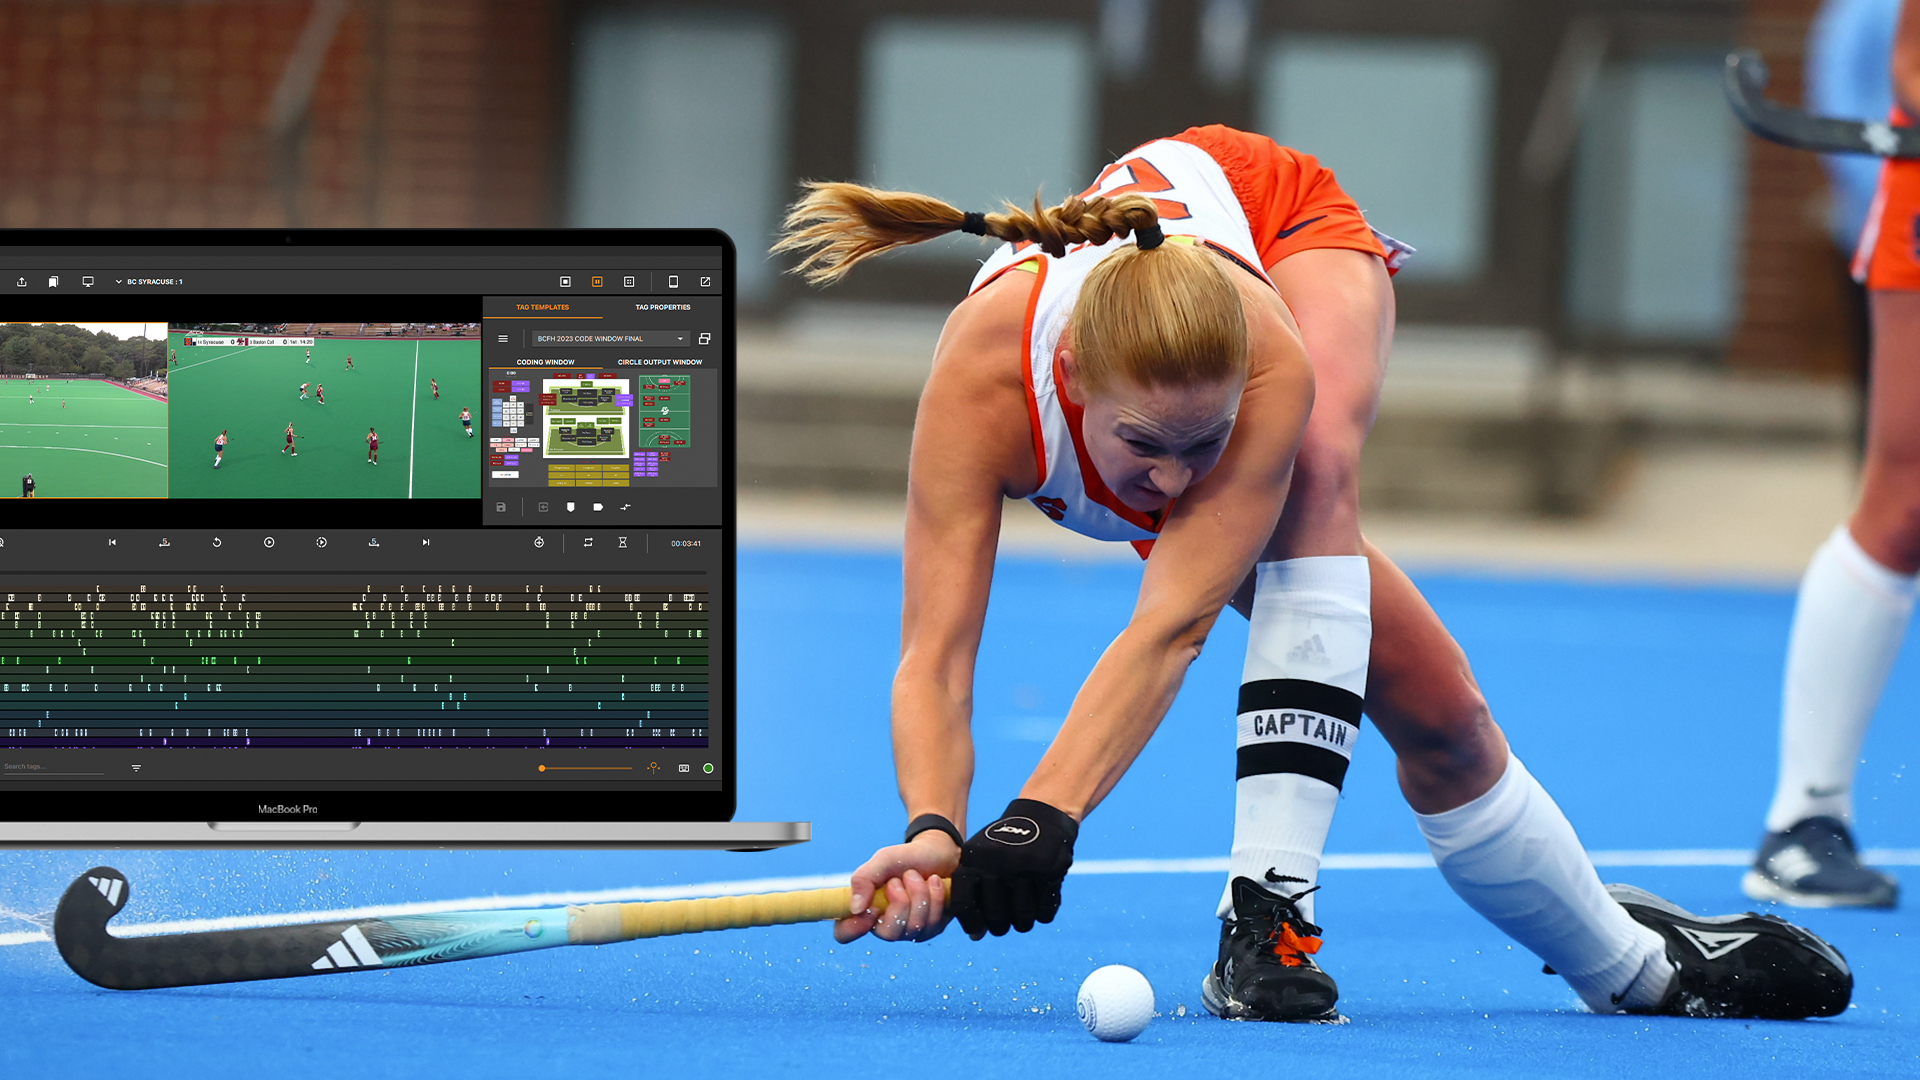 Хоккей на траве NCAA с технологией анализа фокусного видео — изображение героя блога